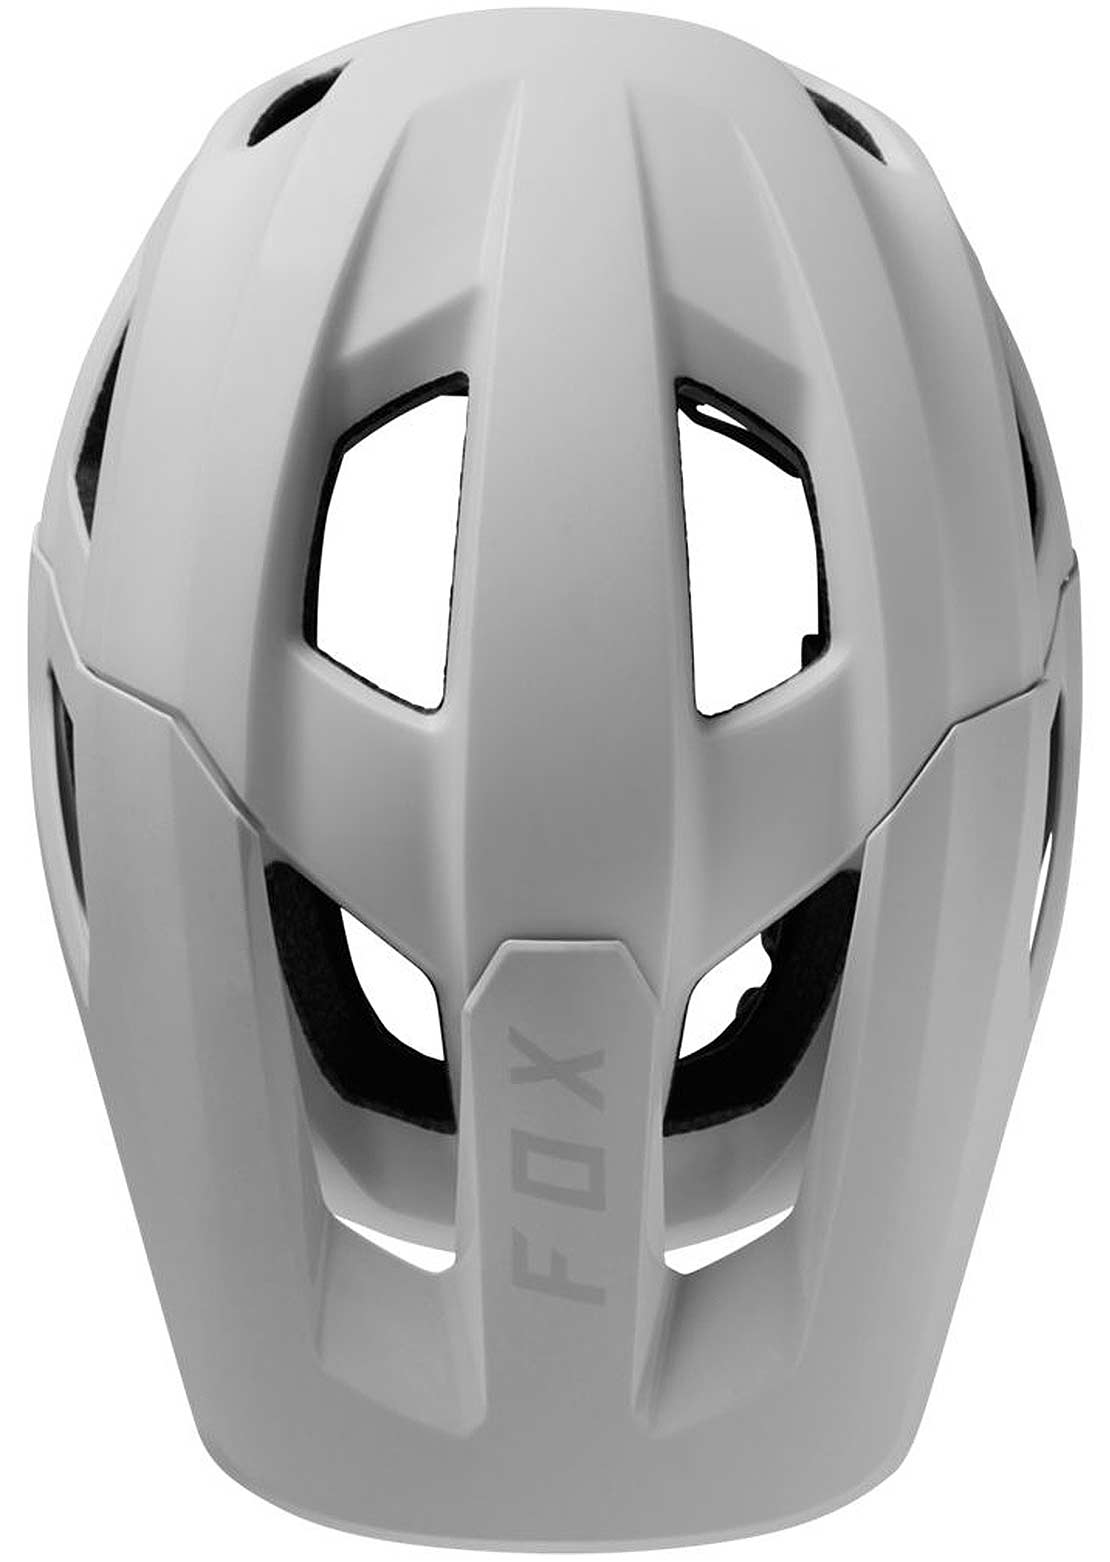 Fox Mainframe TRVRS Mountain Bike Helmet White